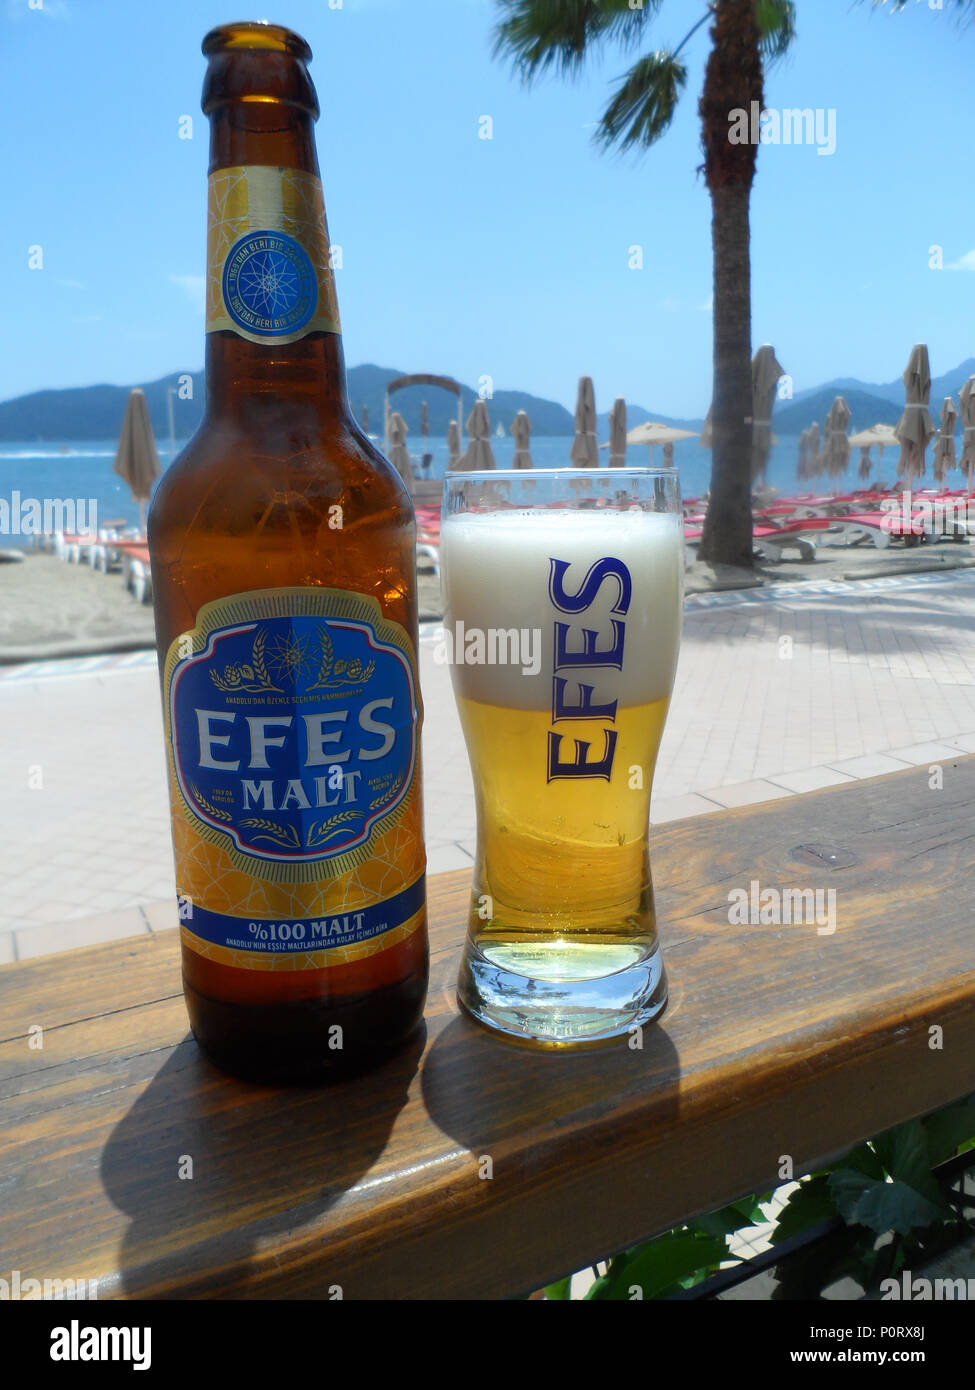 Kalte Flasche EFES Pilsener Malz Bier auf der Strandpromenade, Marmaris,  Türkei Stockfotografie - Alamy